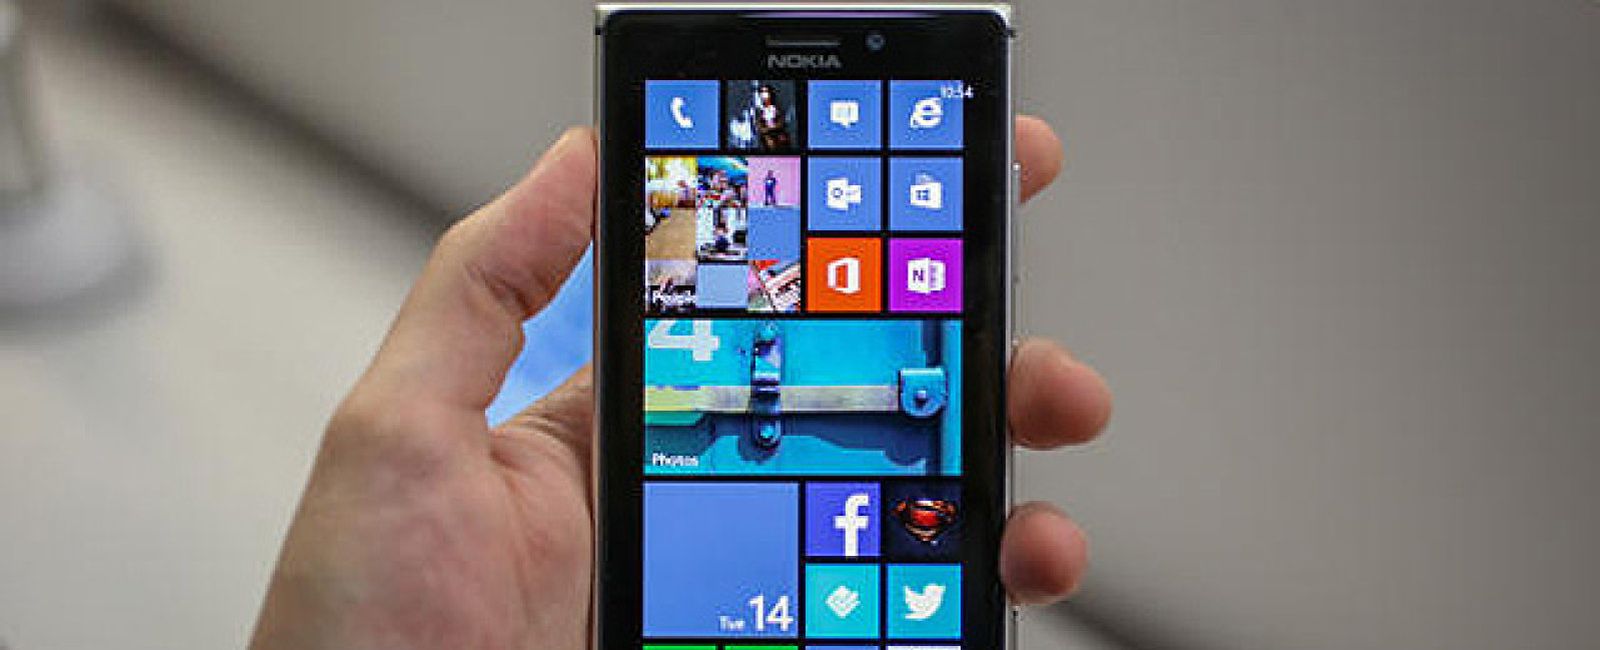 Foto: El protegido de las operadoras: Lumia 925 no se vende libre